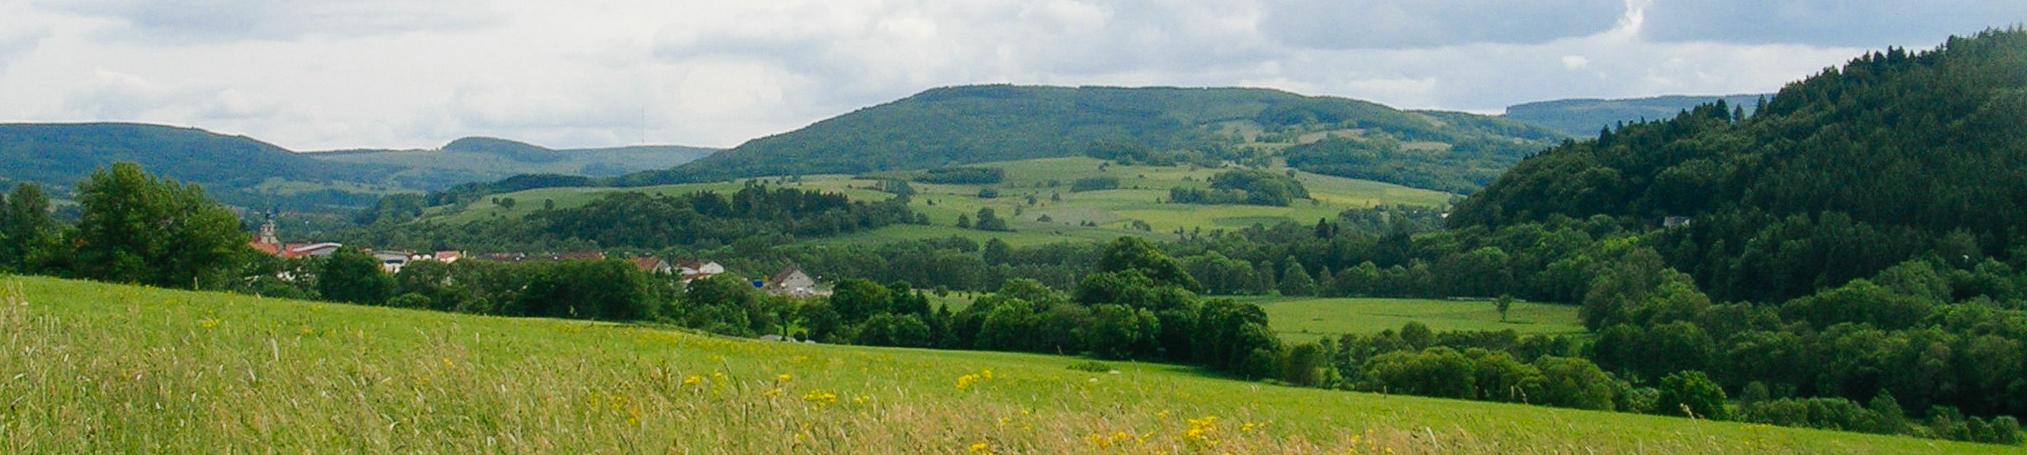 Hügelige Landschaft mit Gehölzgruppen, Ausschnitt einer Siedlung  und Bergen im Hintergrund